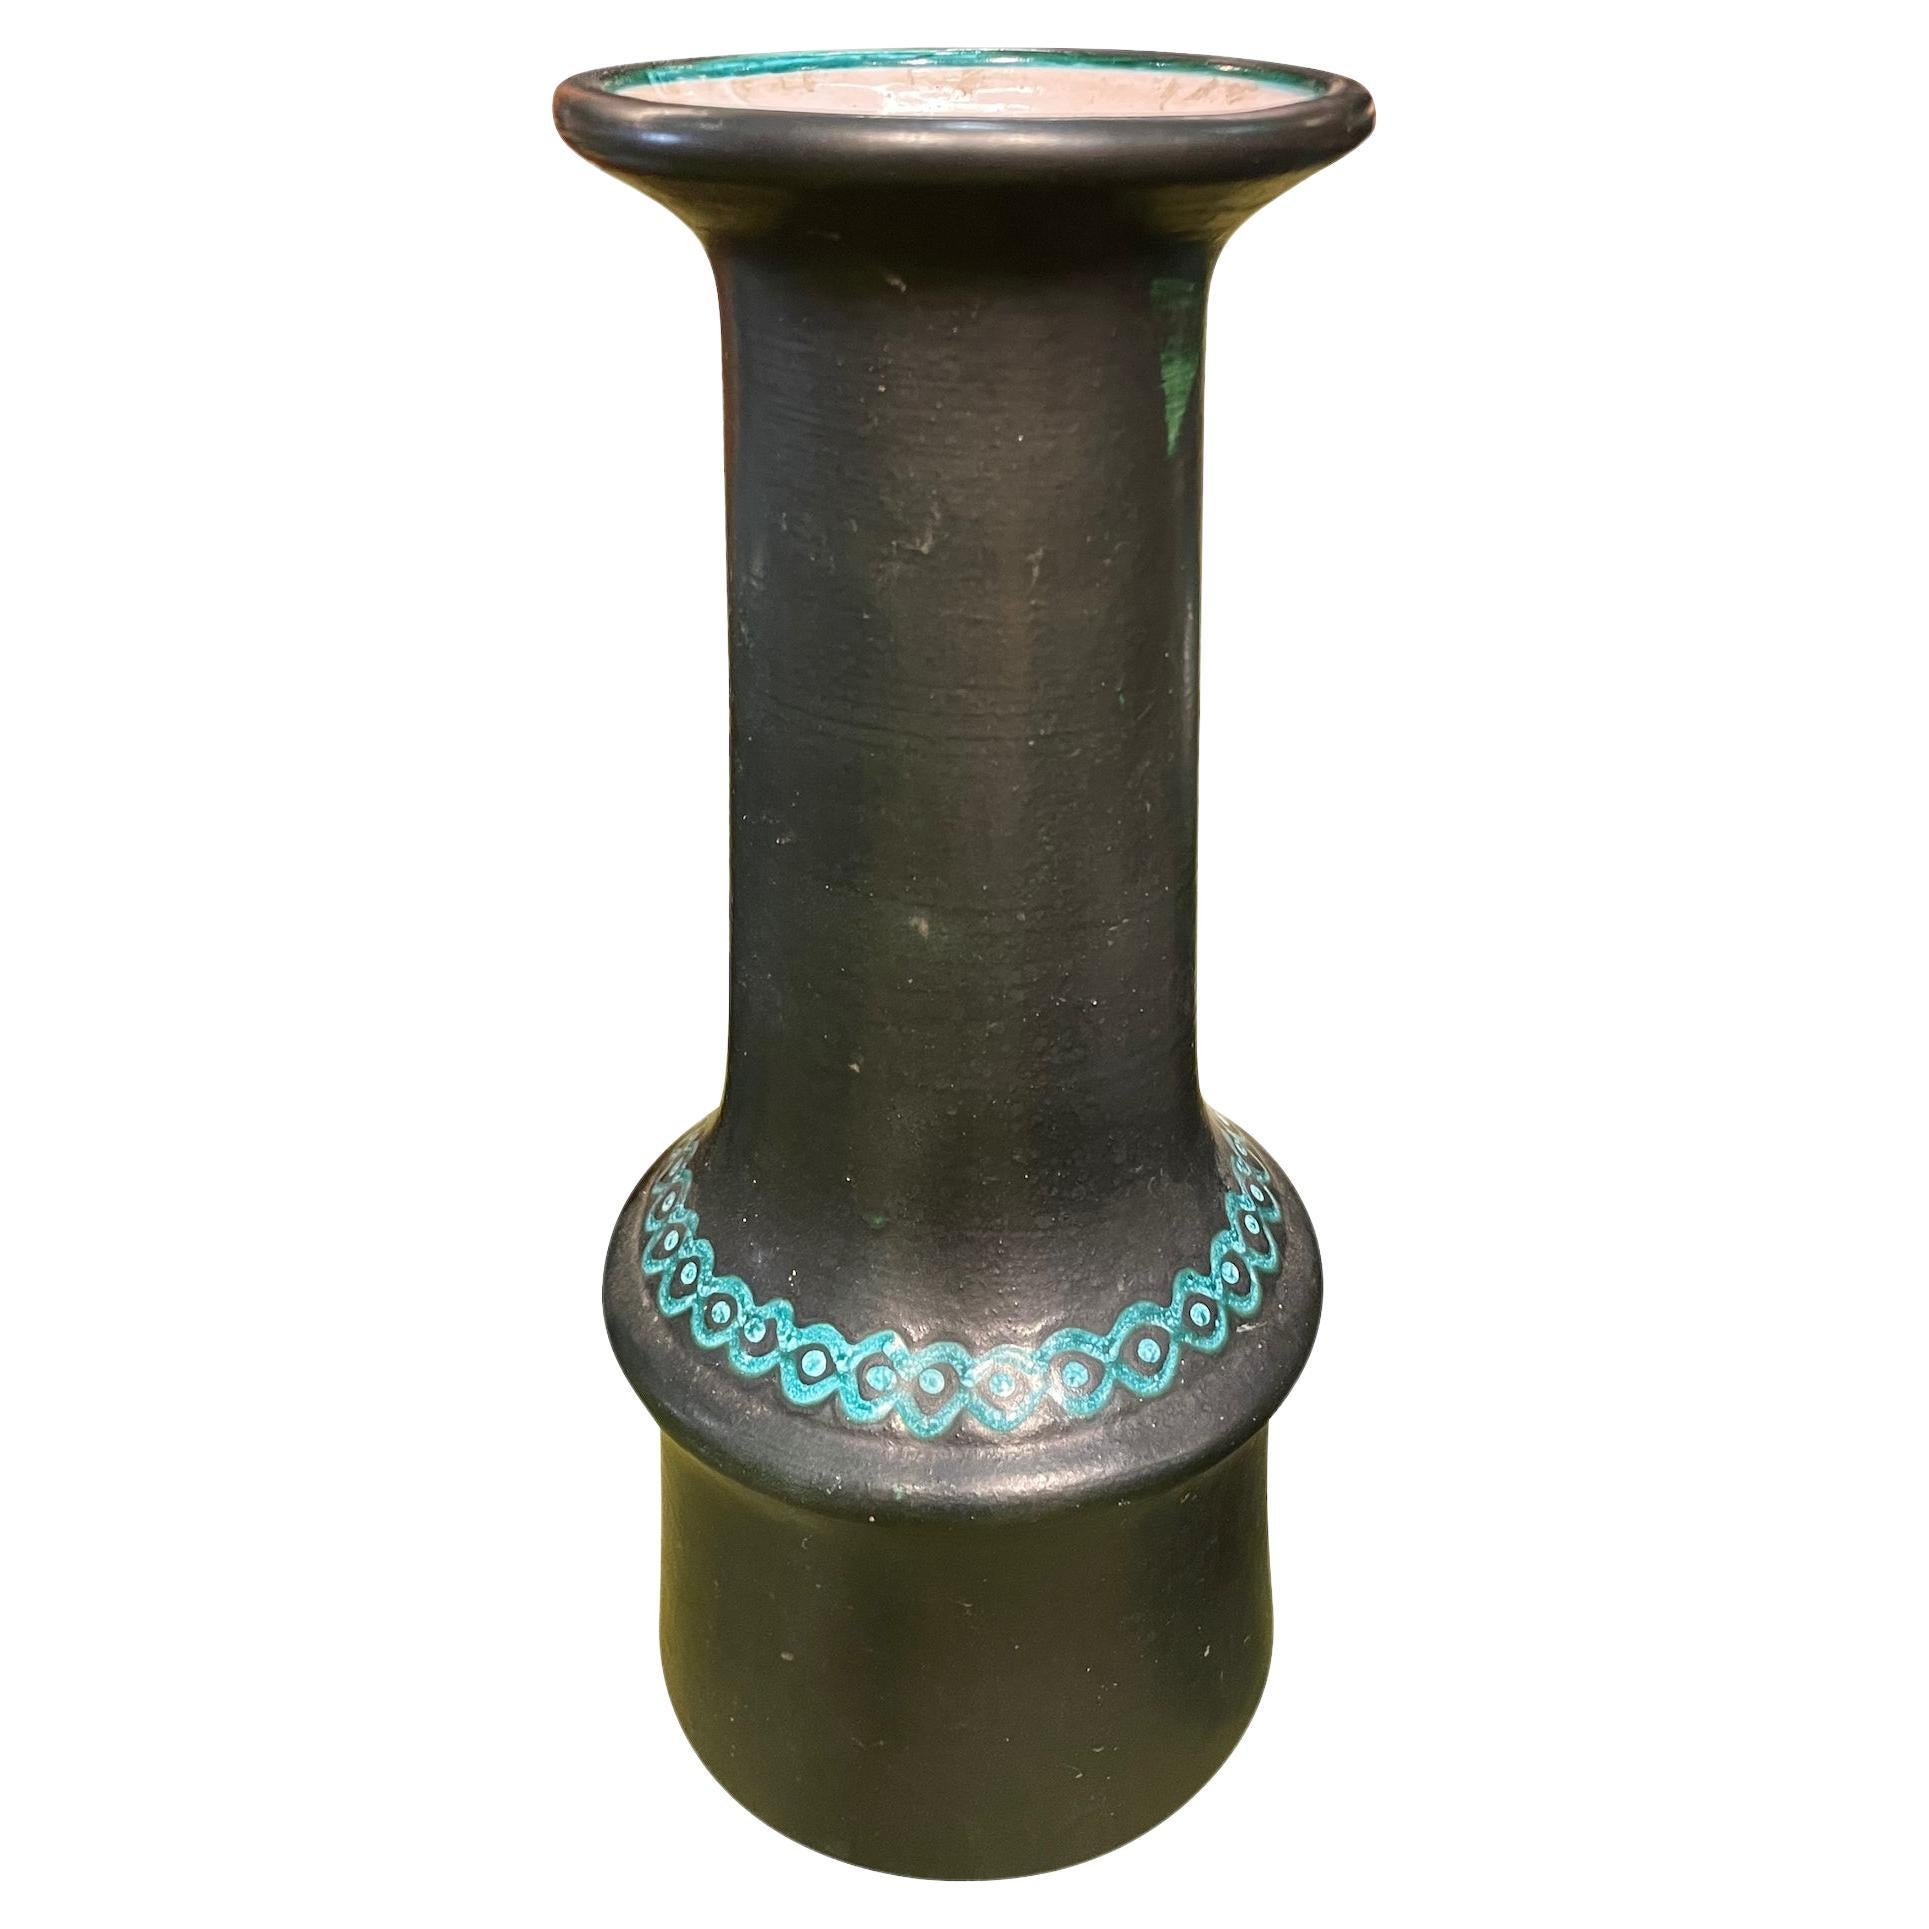 Vase italien du milieu du siècle en glaçure noire solide avec des rayures décoratives turquoises.
D'une collection de tailles et de formes variées.